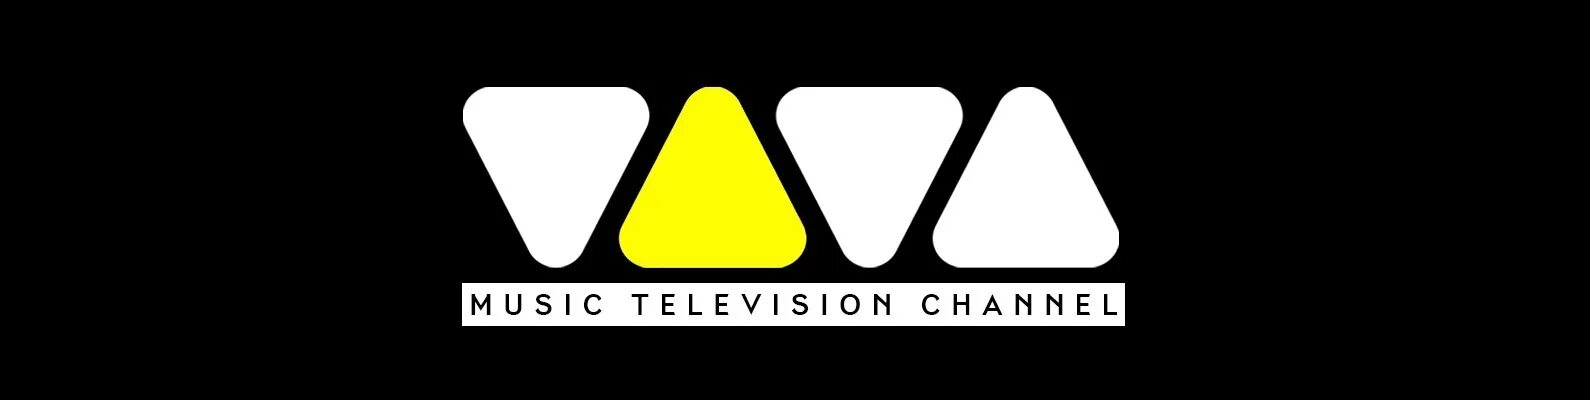 Показать музыкальный канал. Viva Телеканал. Viva музыкальный канал. Viva логотип канала. Логотип мшмфч.